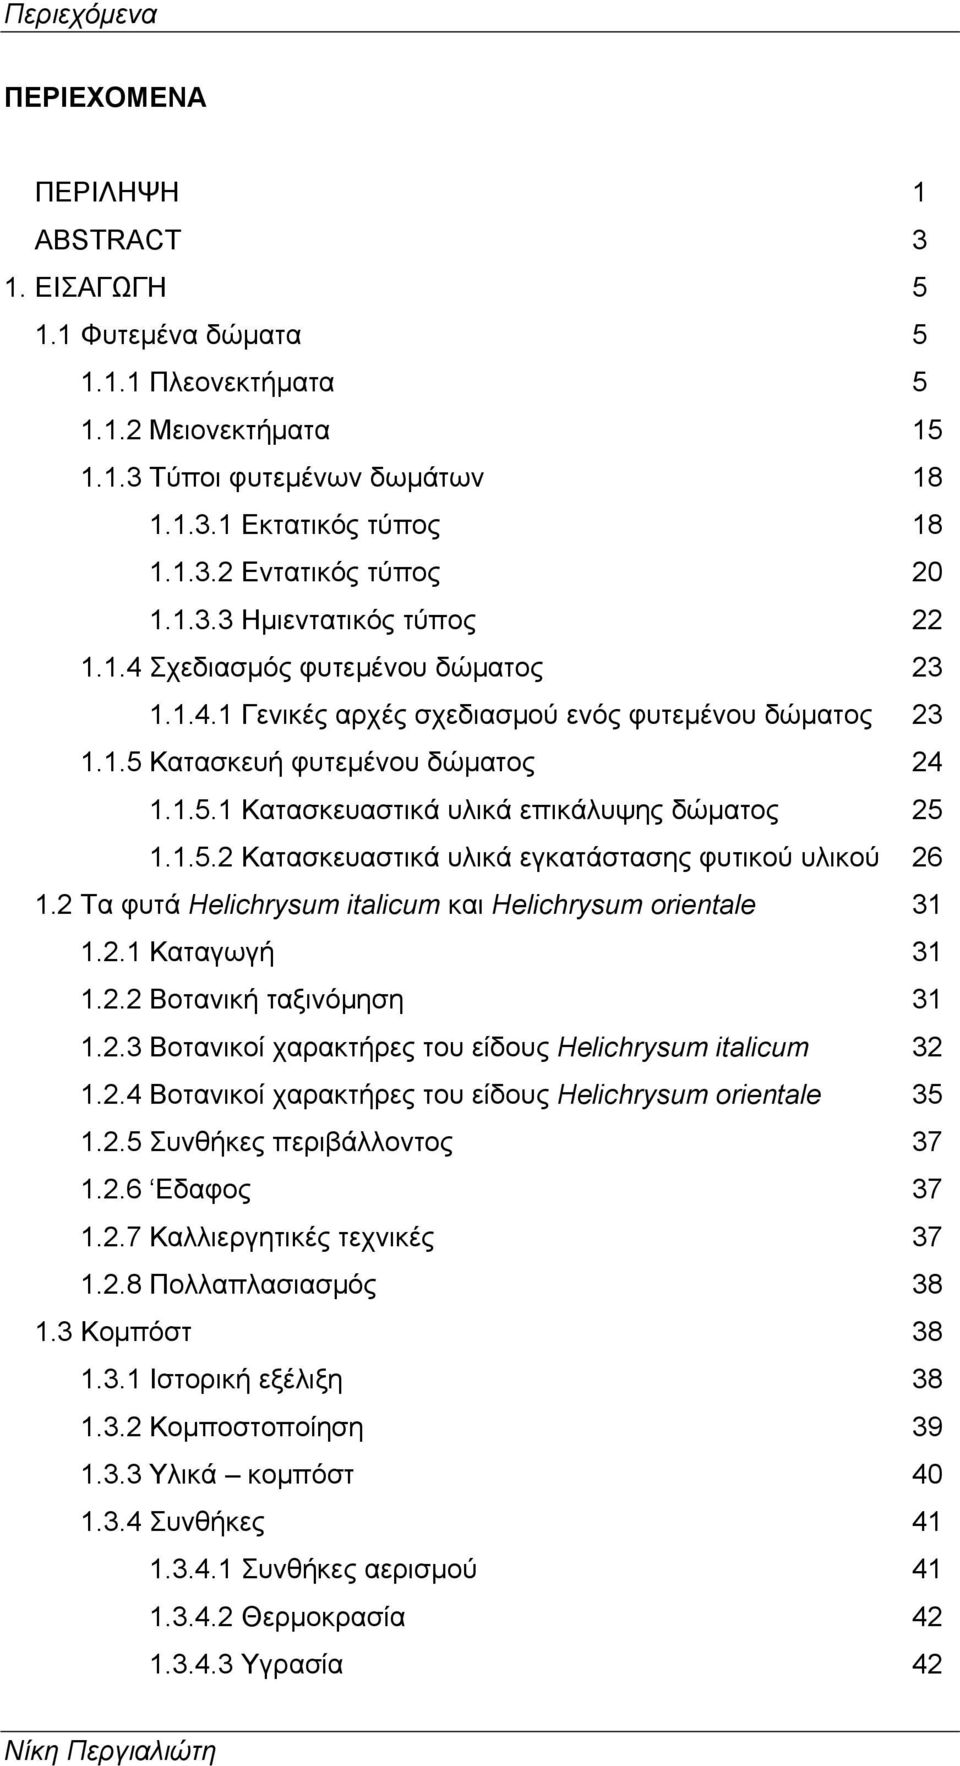 1.5.2 Κατασκευαστικά υλικά εγκατάστασης φυτικού υλικού 26 1.2 Τα φυτά Helichrysum italicum και Helichrysum orientale 31 1.2.1 Καταγωγή 31 1.2.2 Βοτανική ταξινόμηση 31 1.2.3 Βοτανικοί χαρακτήρες του είδους Helichrysum italicum 32 1.